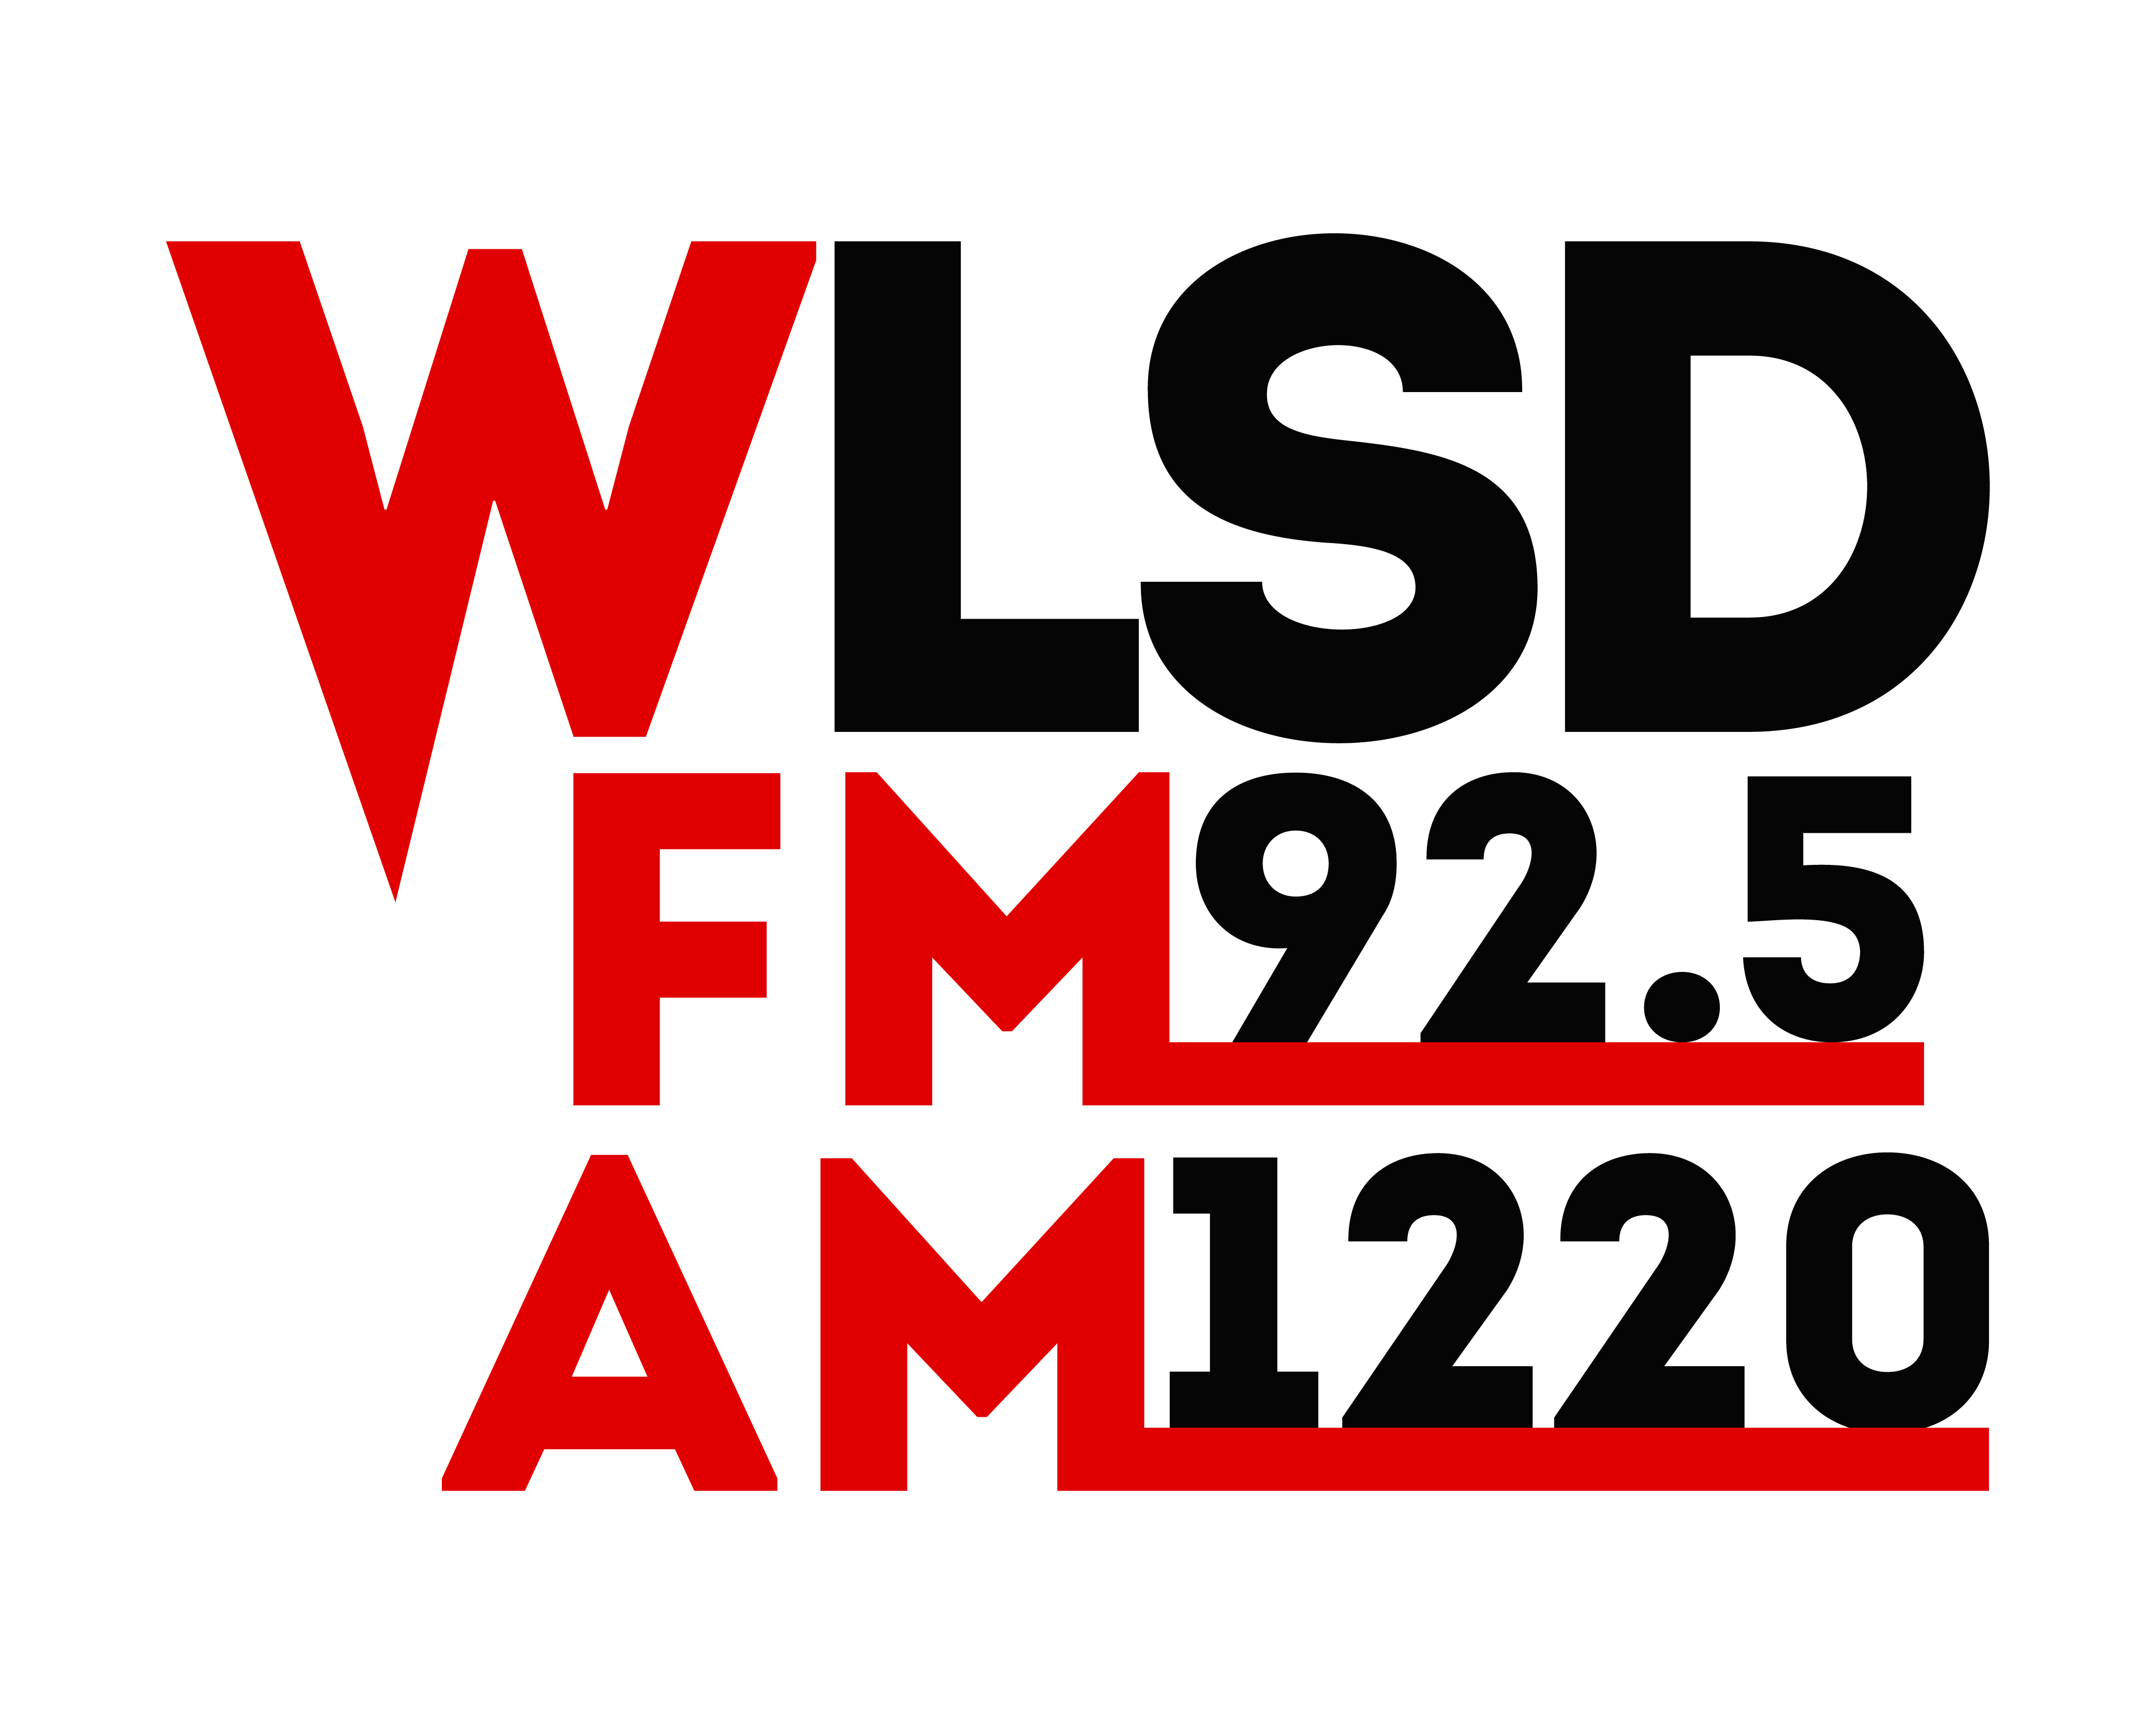 WLSD FM 92.5 AM 1220